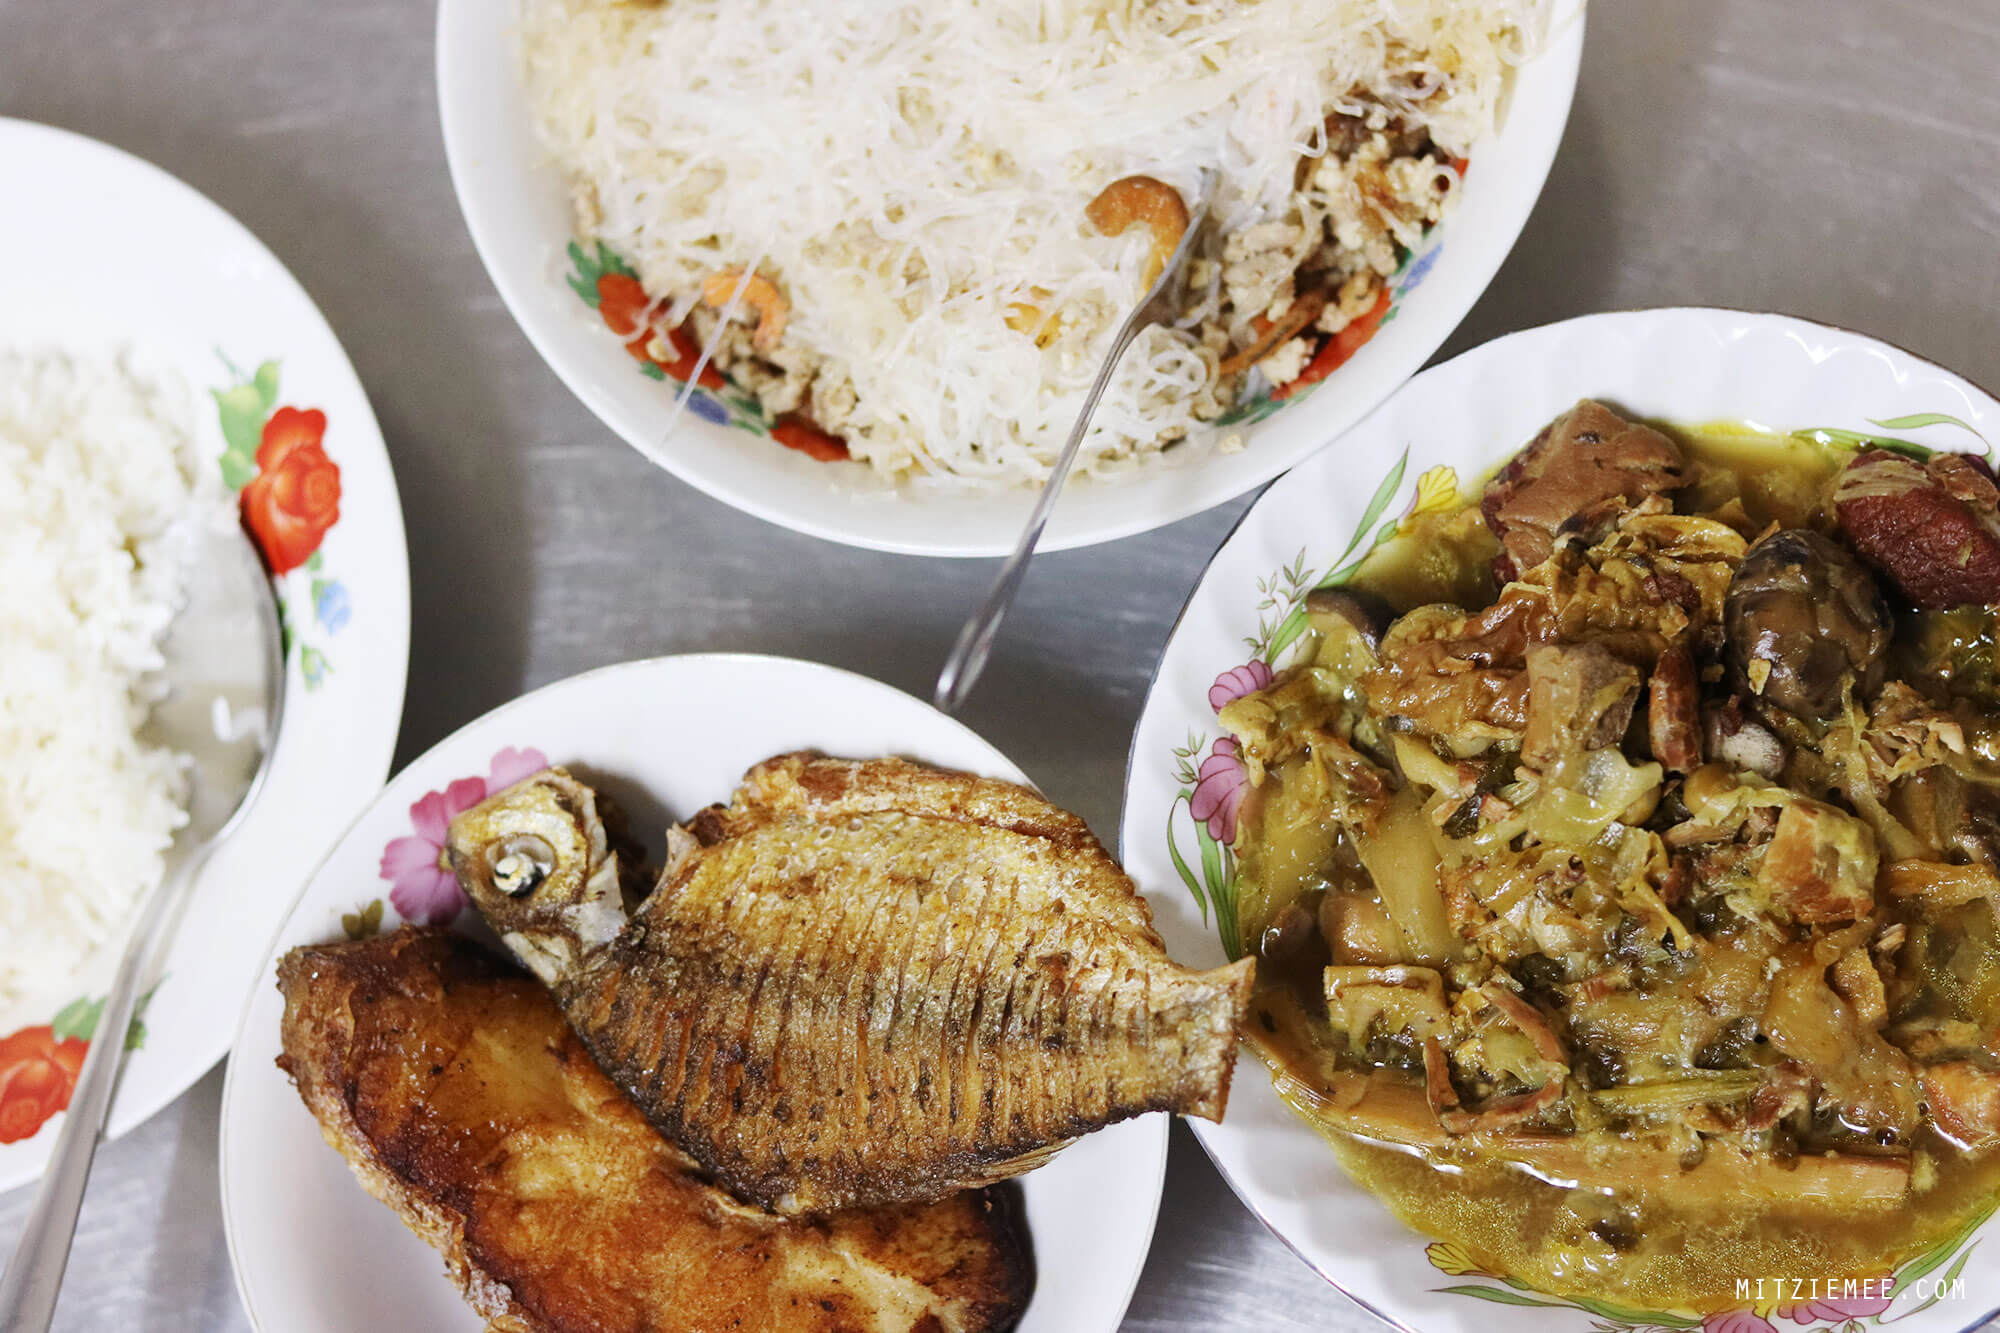 Khmer dinner